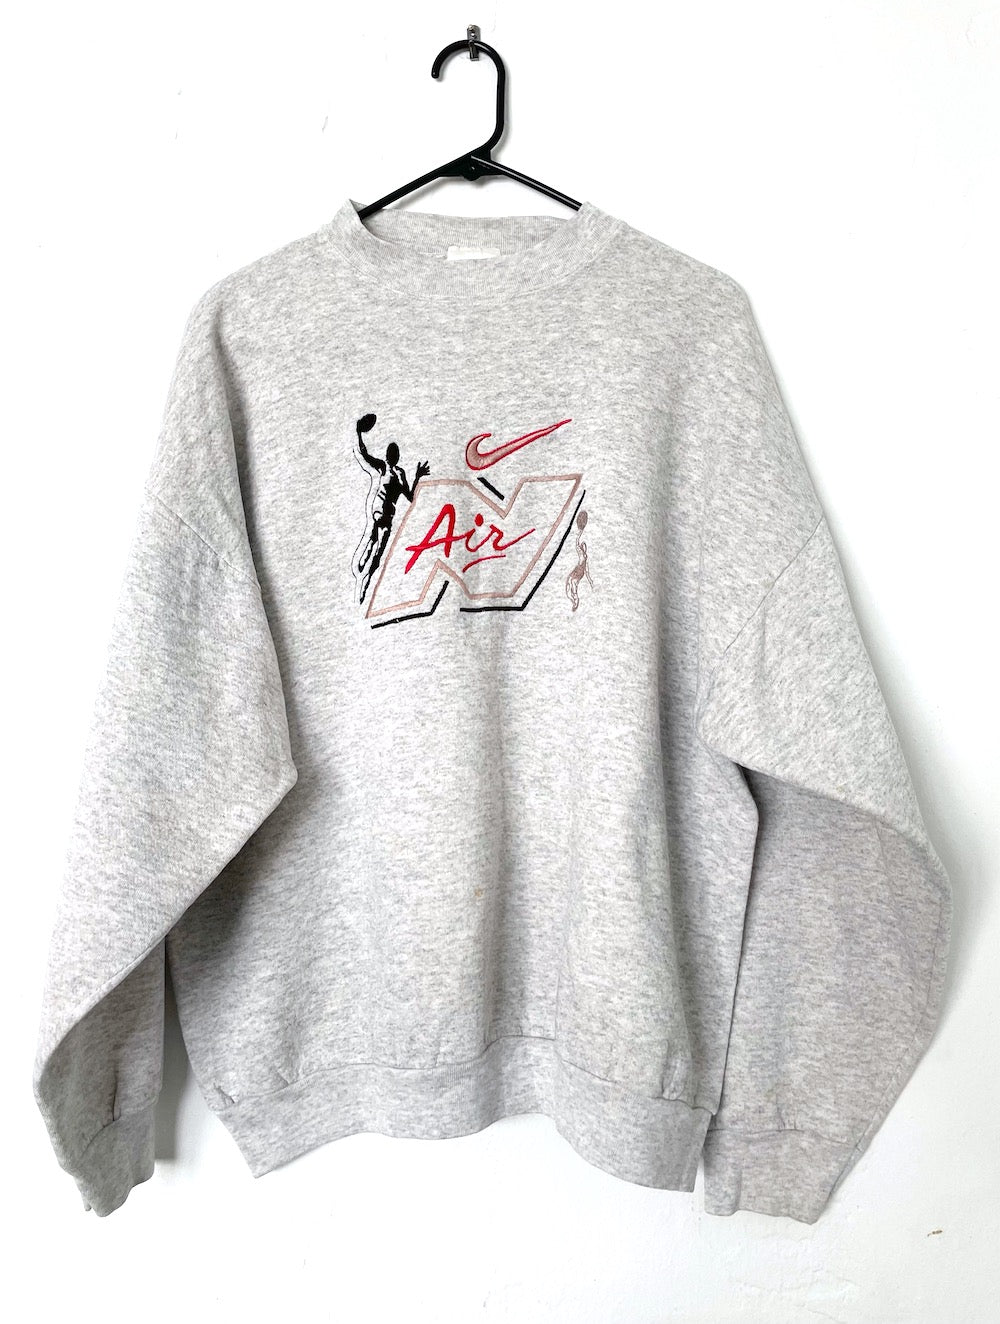 Vintage 90s Grey Embroidered Nike Air Sweatshirt